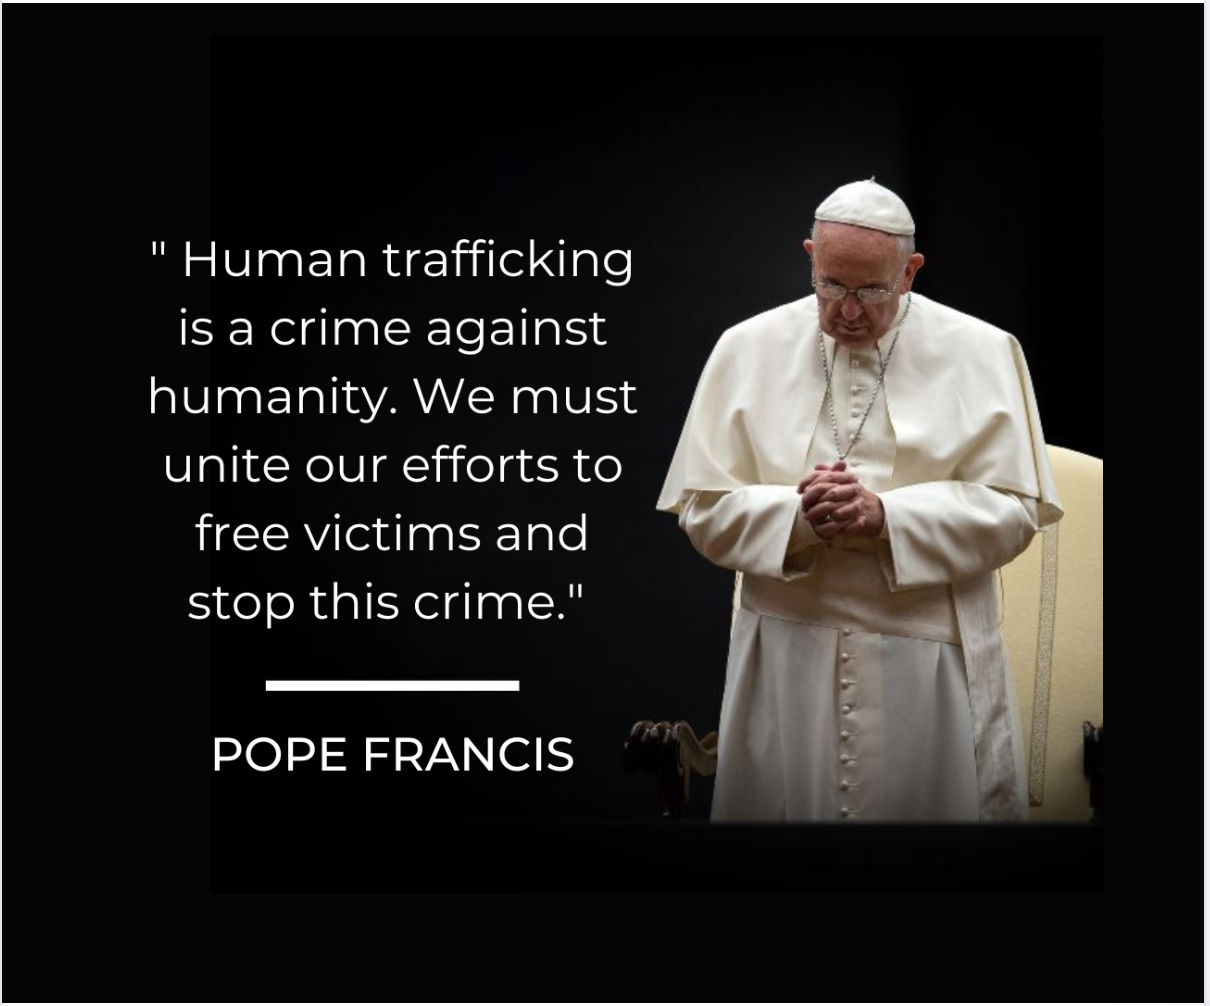 Sipi ni Pope Francis tungkol sa human trafficking